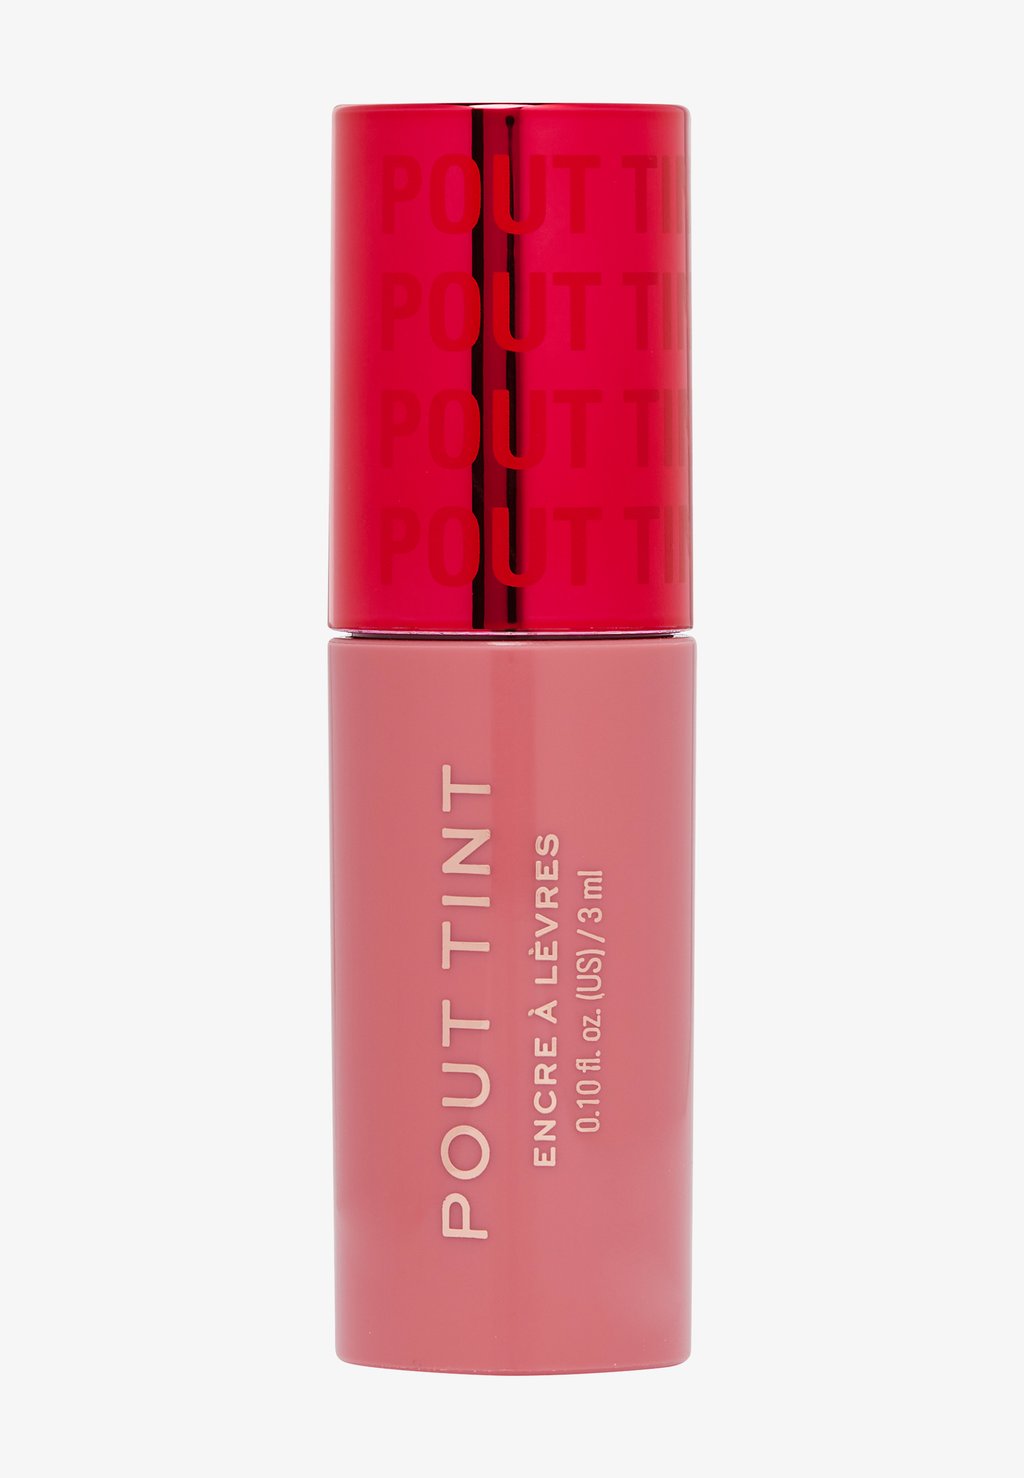 Тинт для губ и щек REVOLUTION POUT TINT Makeup Revolution, цвет sweet pink